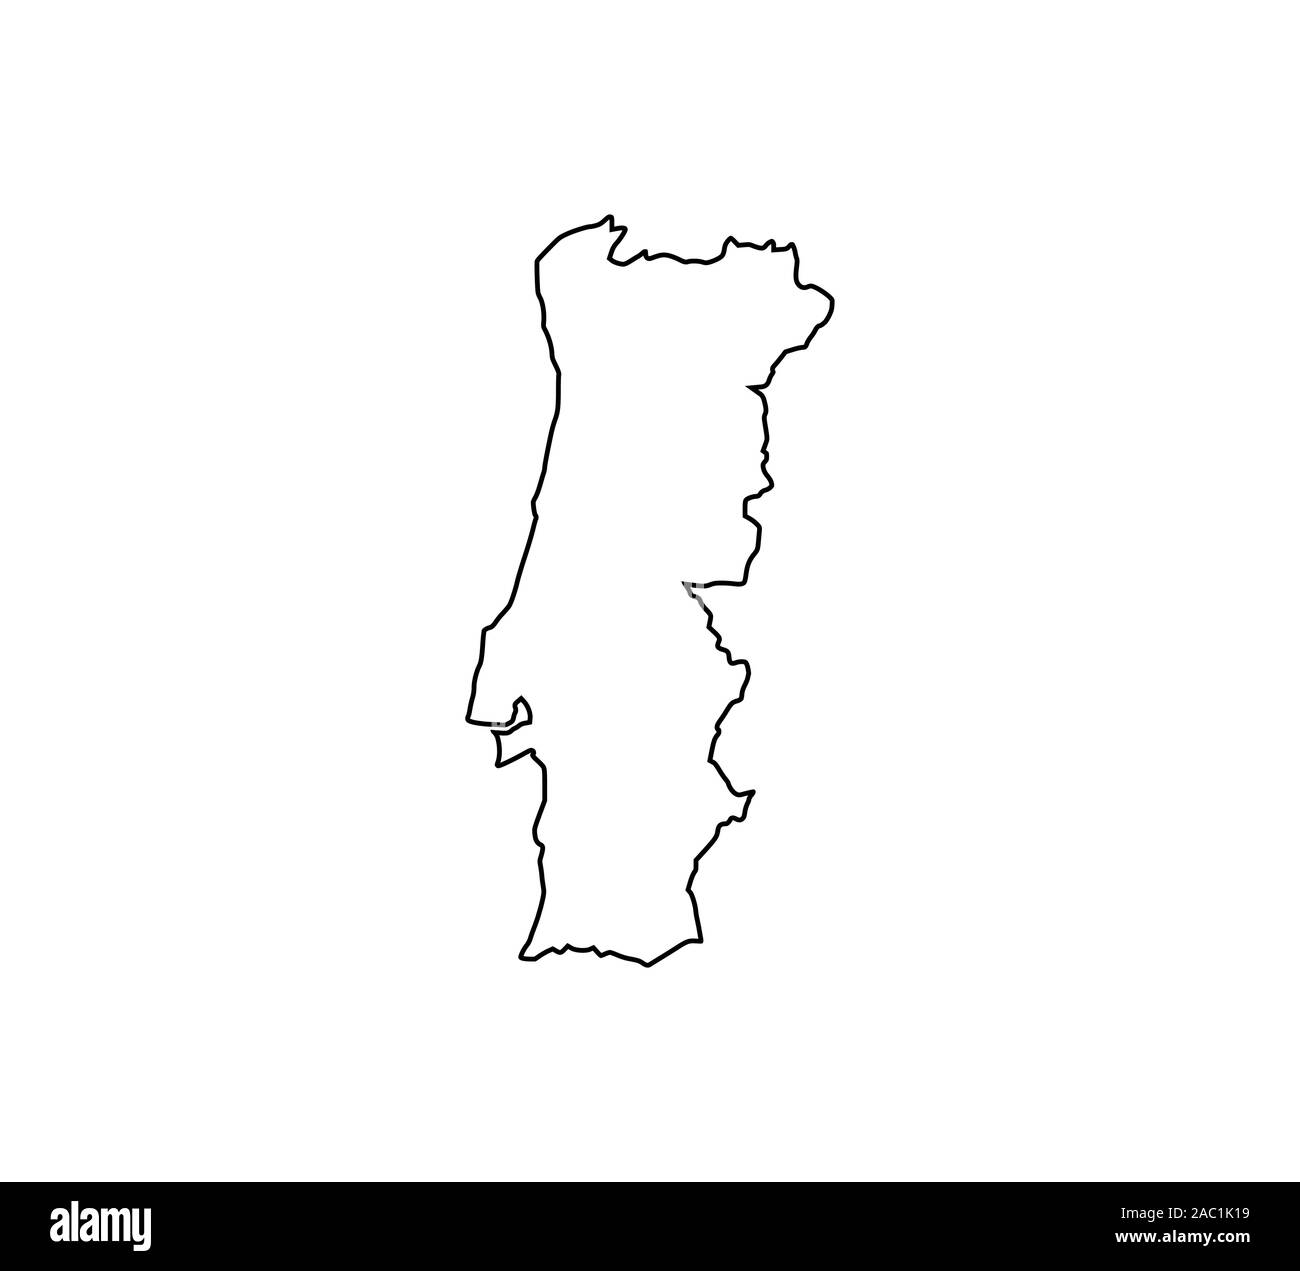 Carte du Portugal sur fond blanc. Vector illustration. Illustration de Vecteur